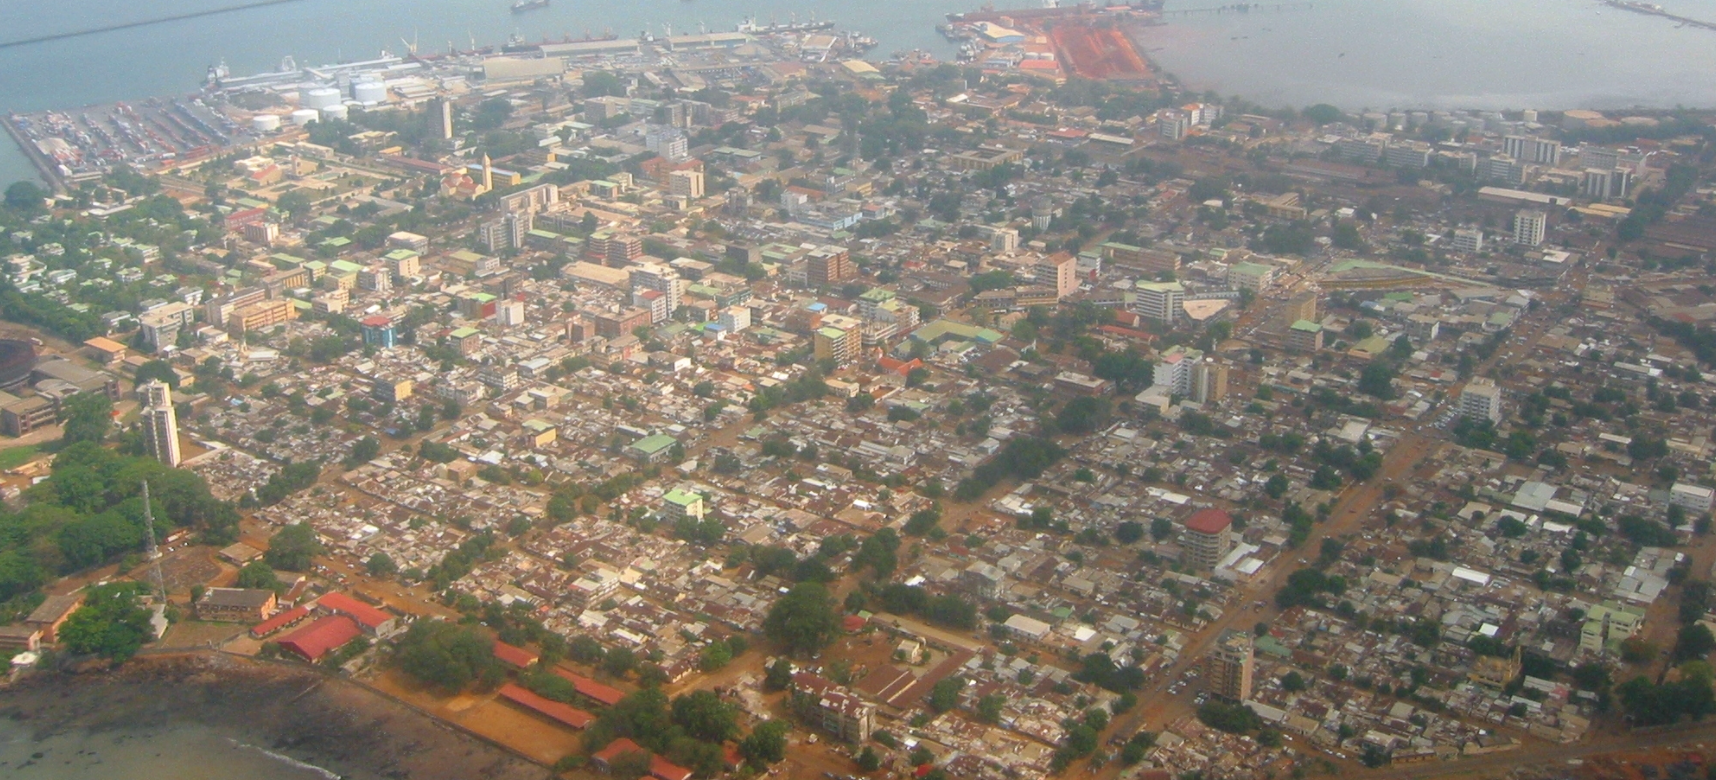 conakry Joelguinea